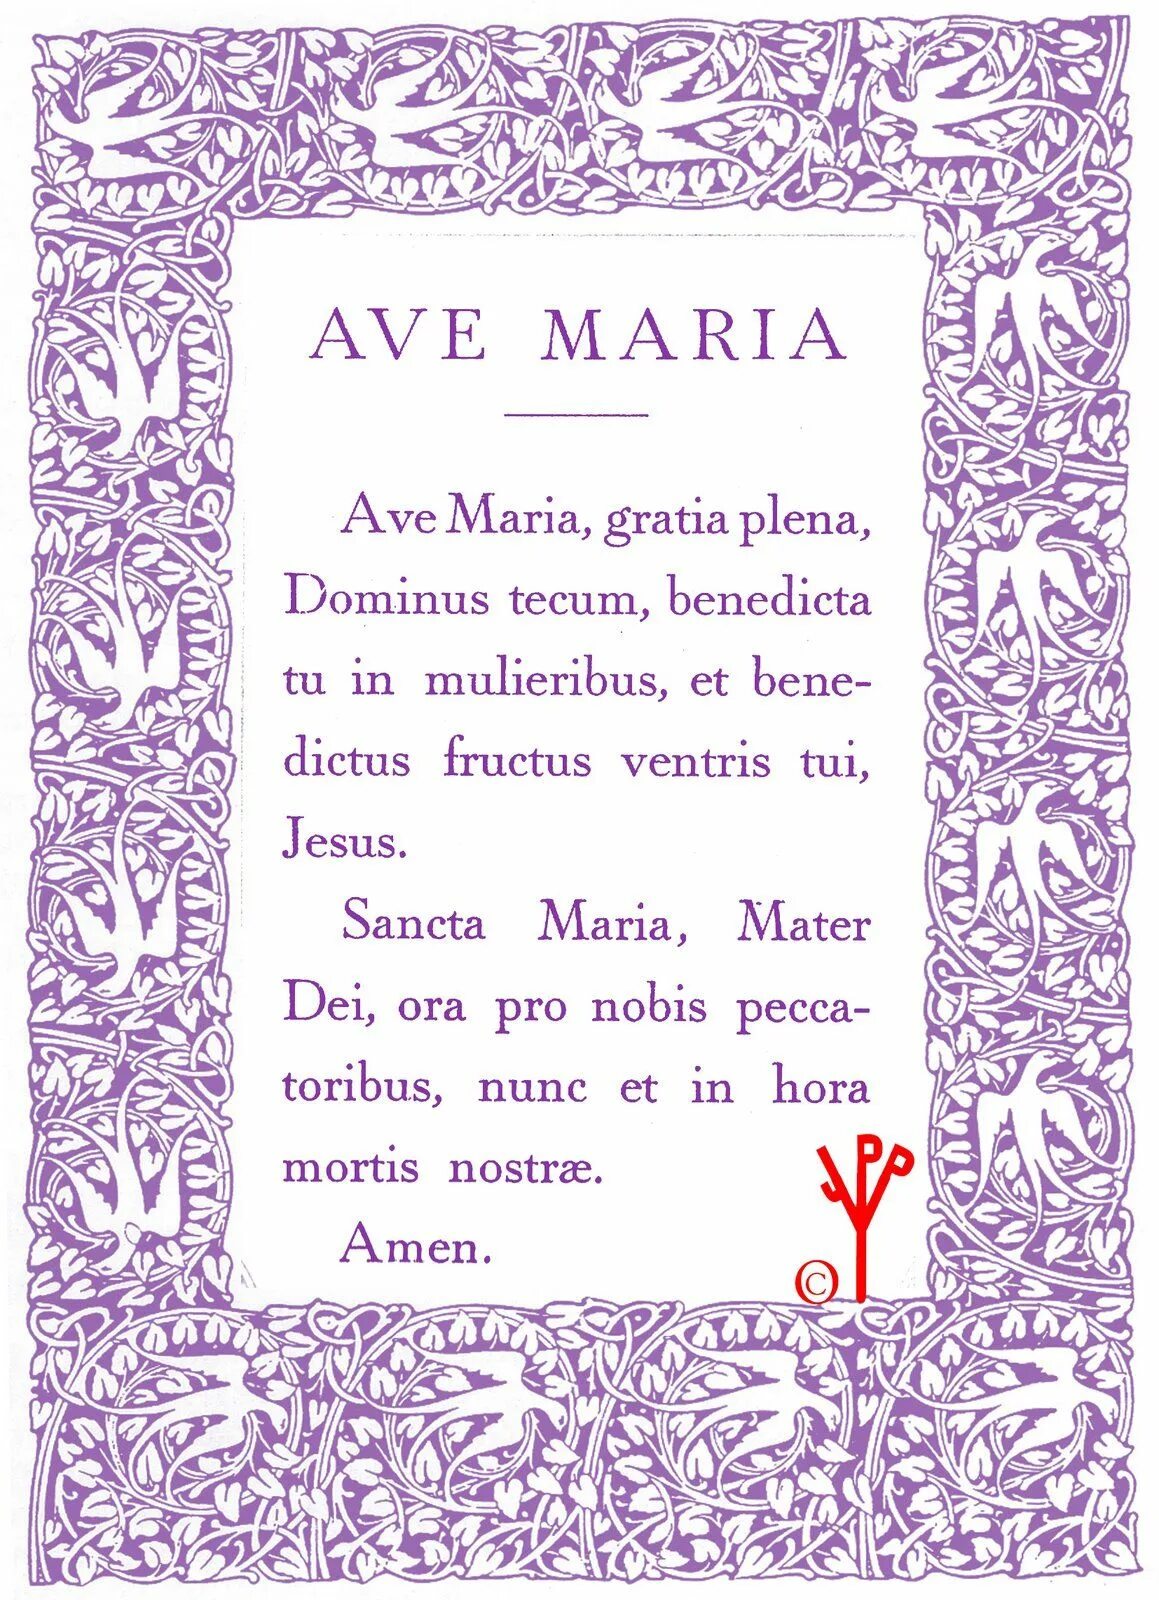 Ave Maria молитва на латыни. Аве на латыни